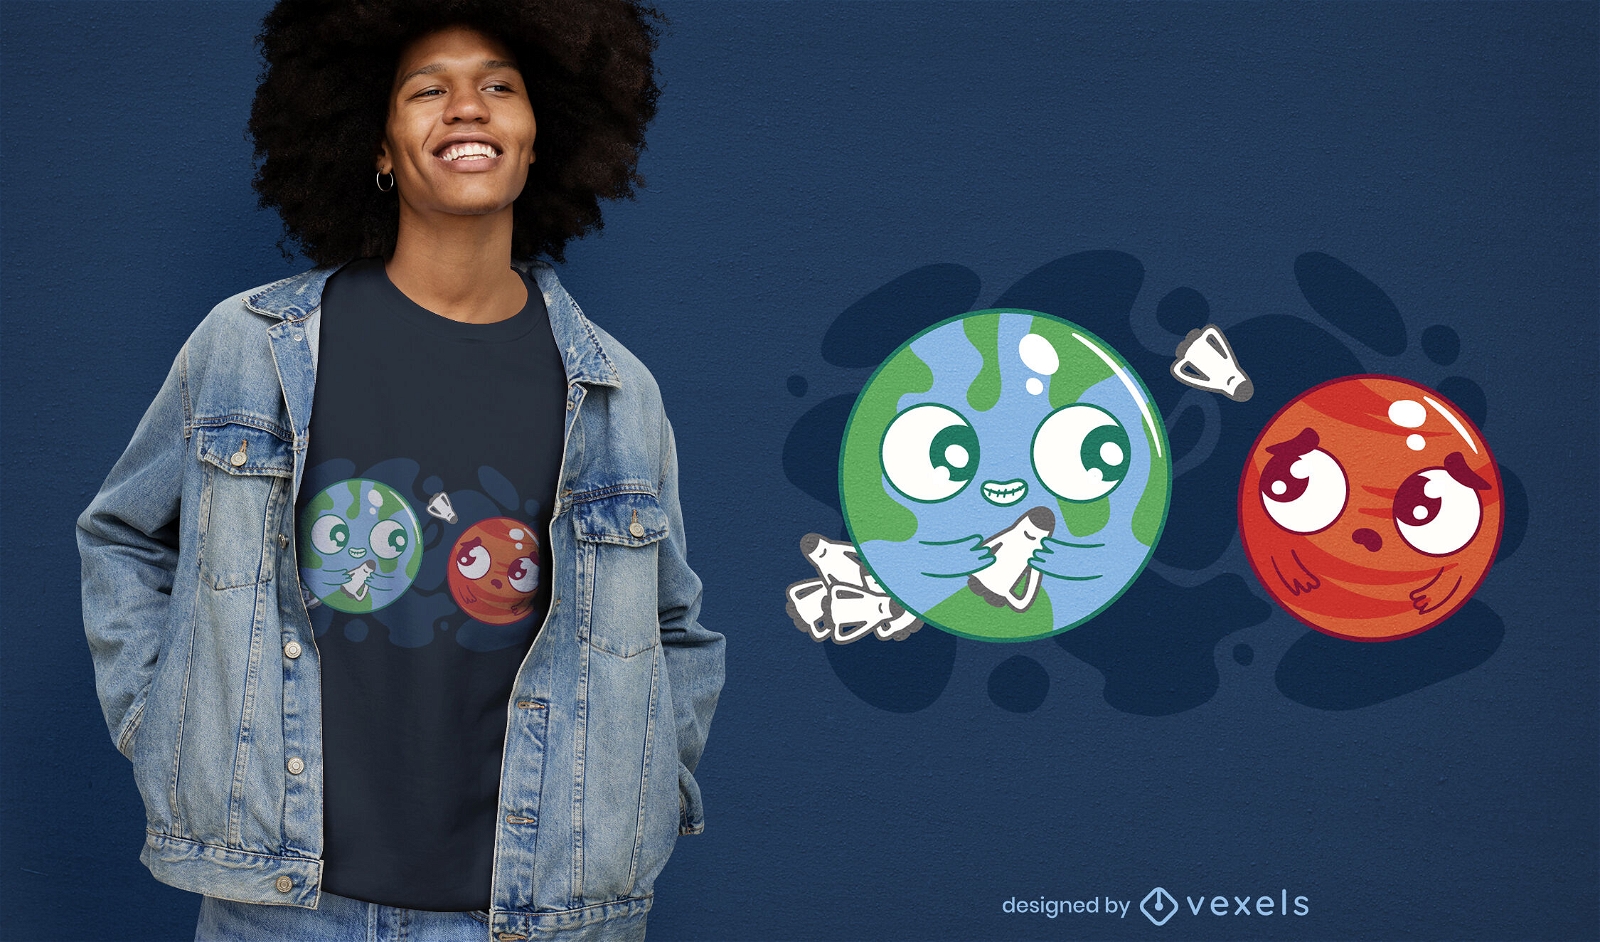 Diseño de camiseta de la Tierra invadiendo el espacio de Marte.